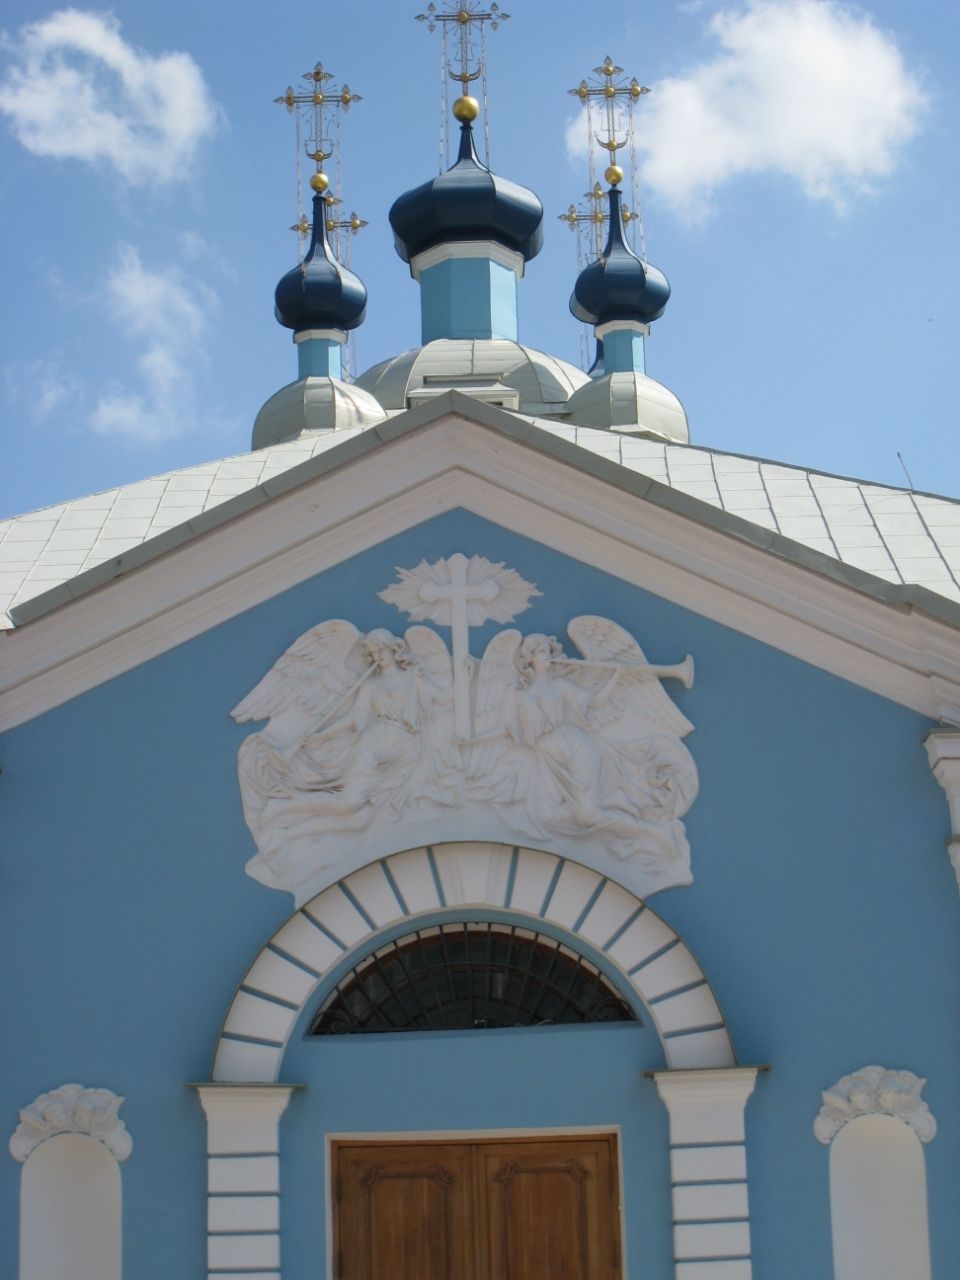 Сампсониевский собор Санкт-Петербург, Россия